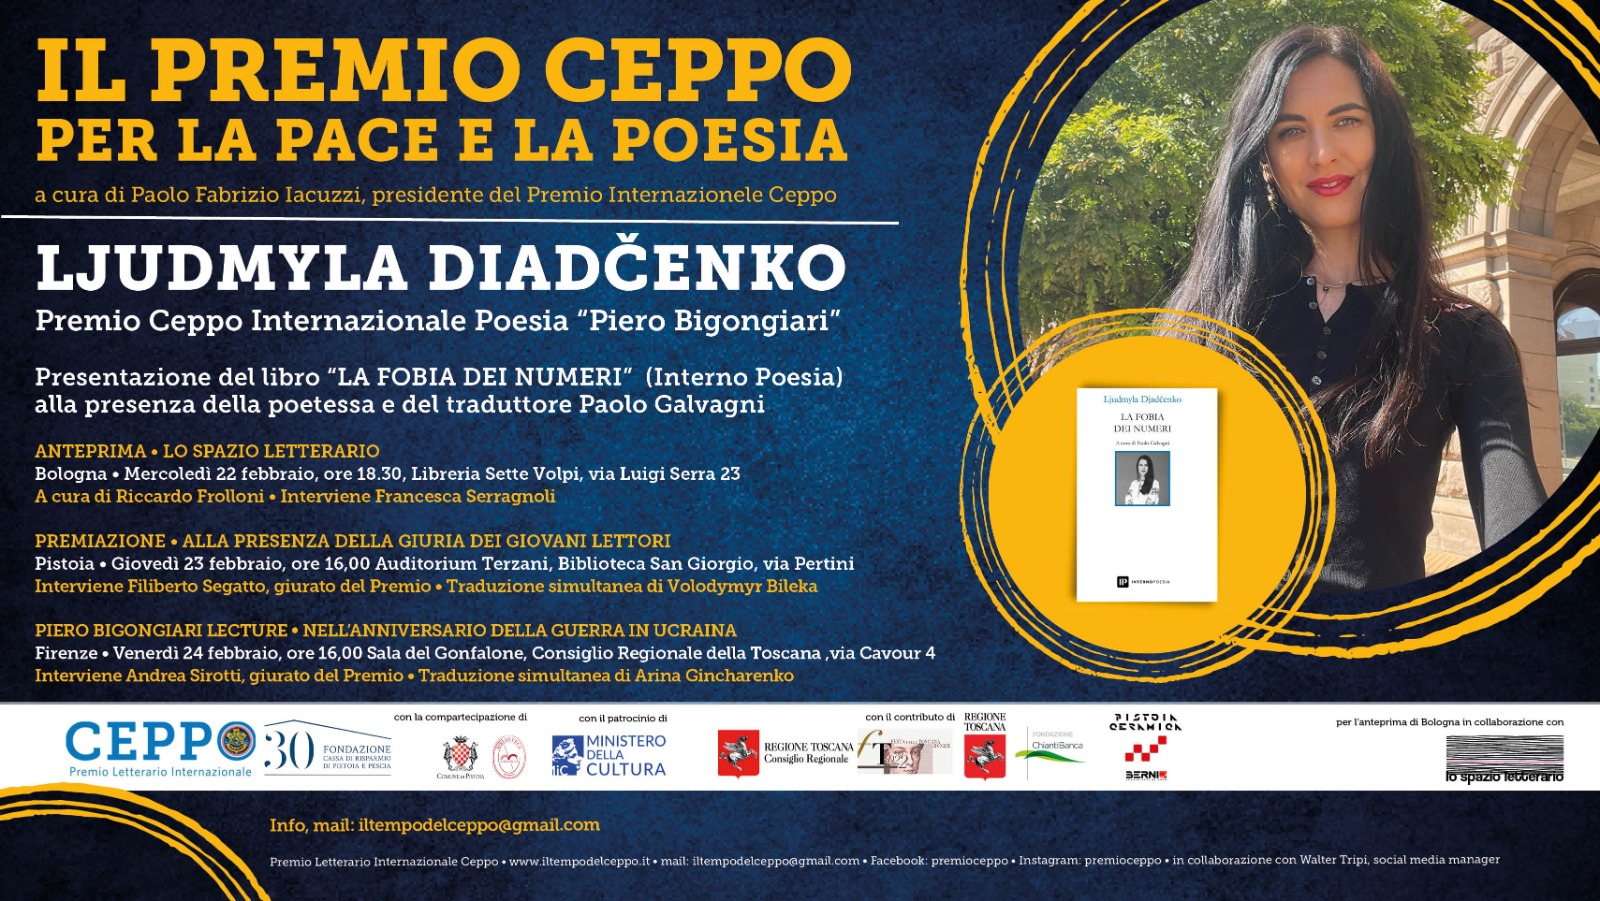 Il premio Ceppo per la pace e la poesia